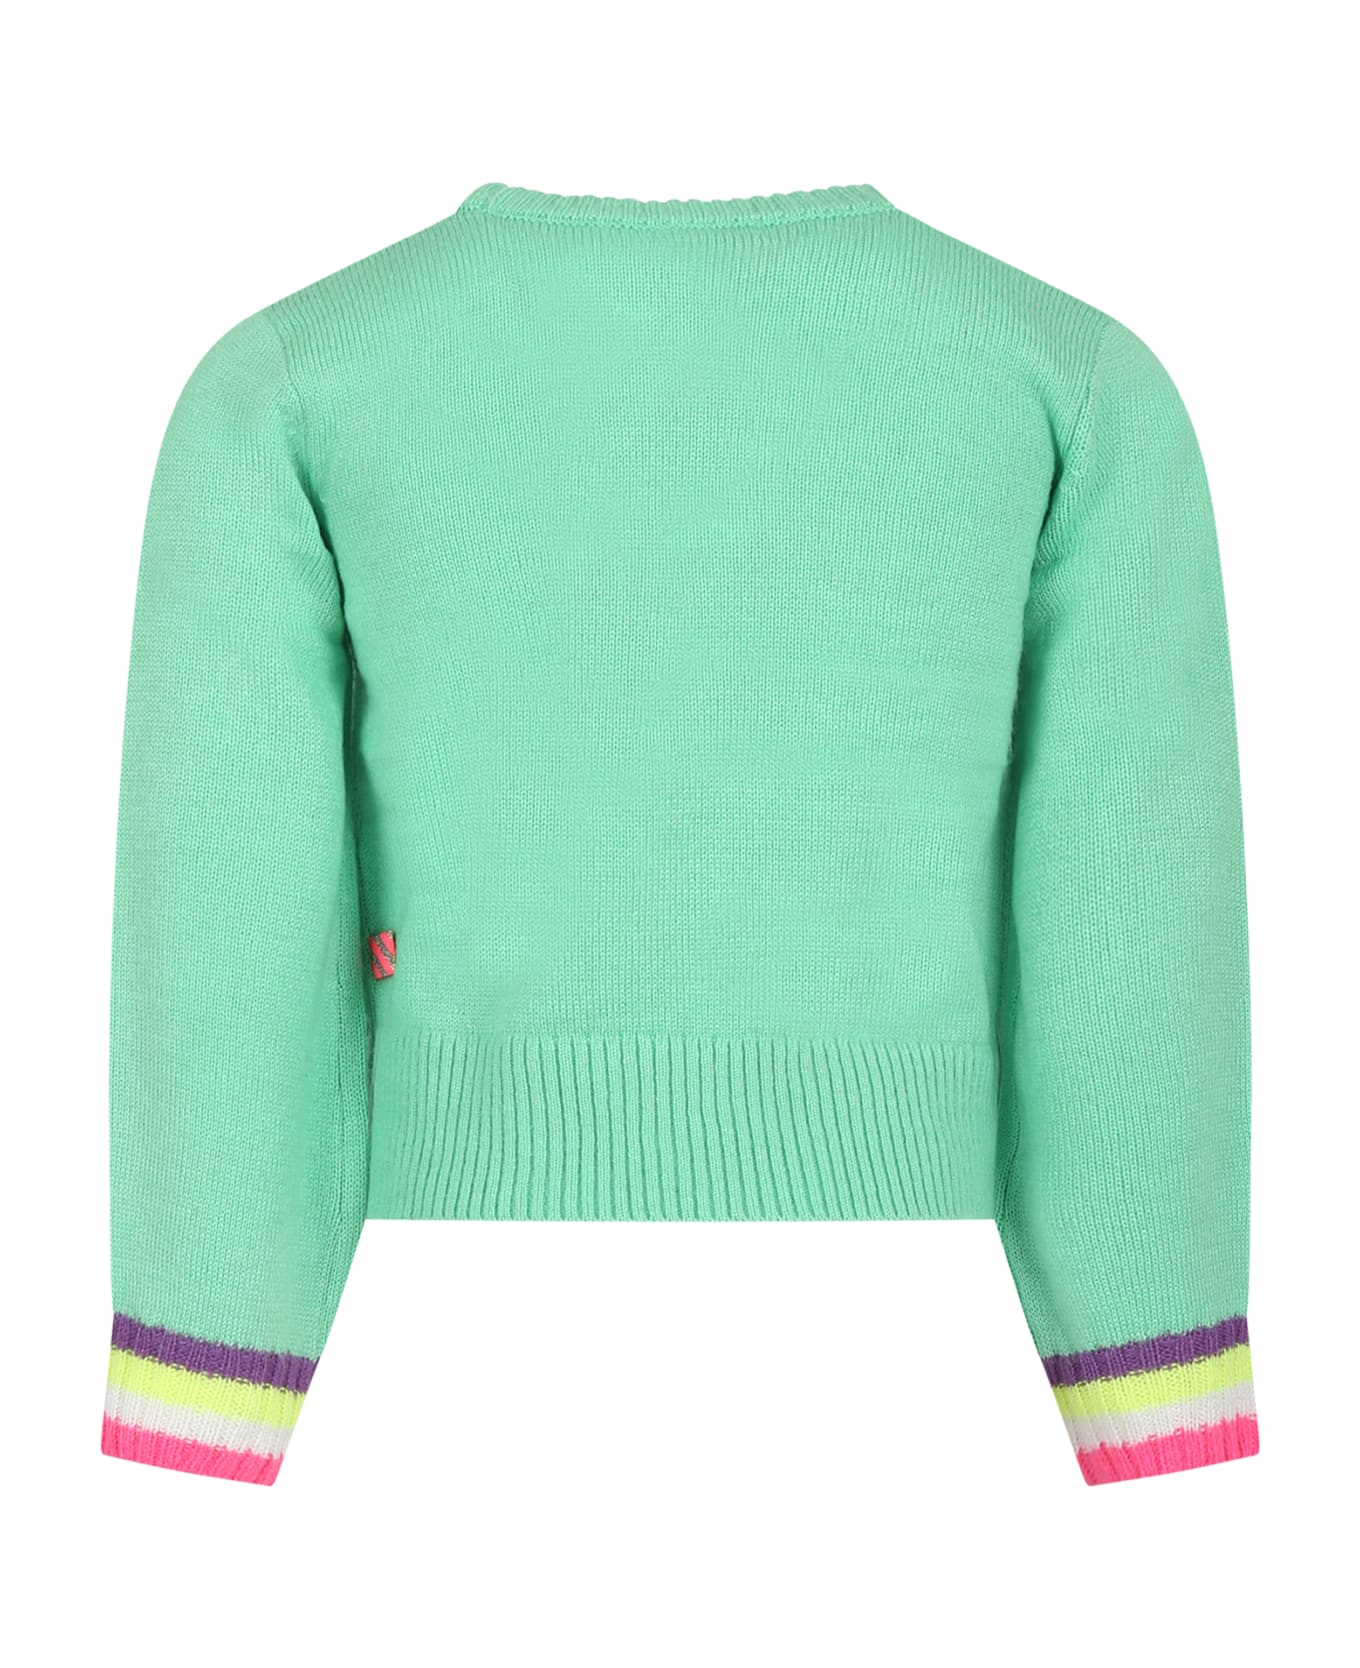 Billieblush Green Sweater For Girl - Green